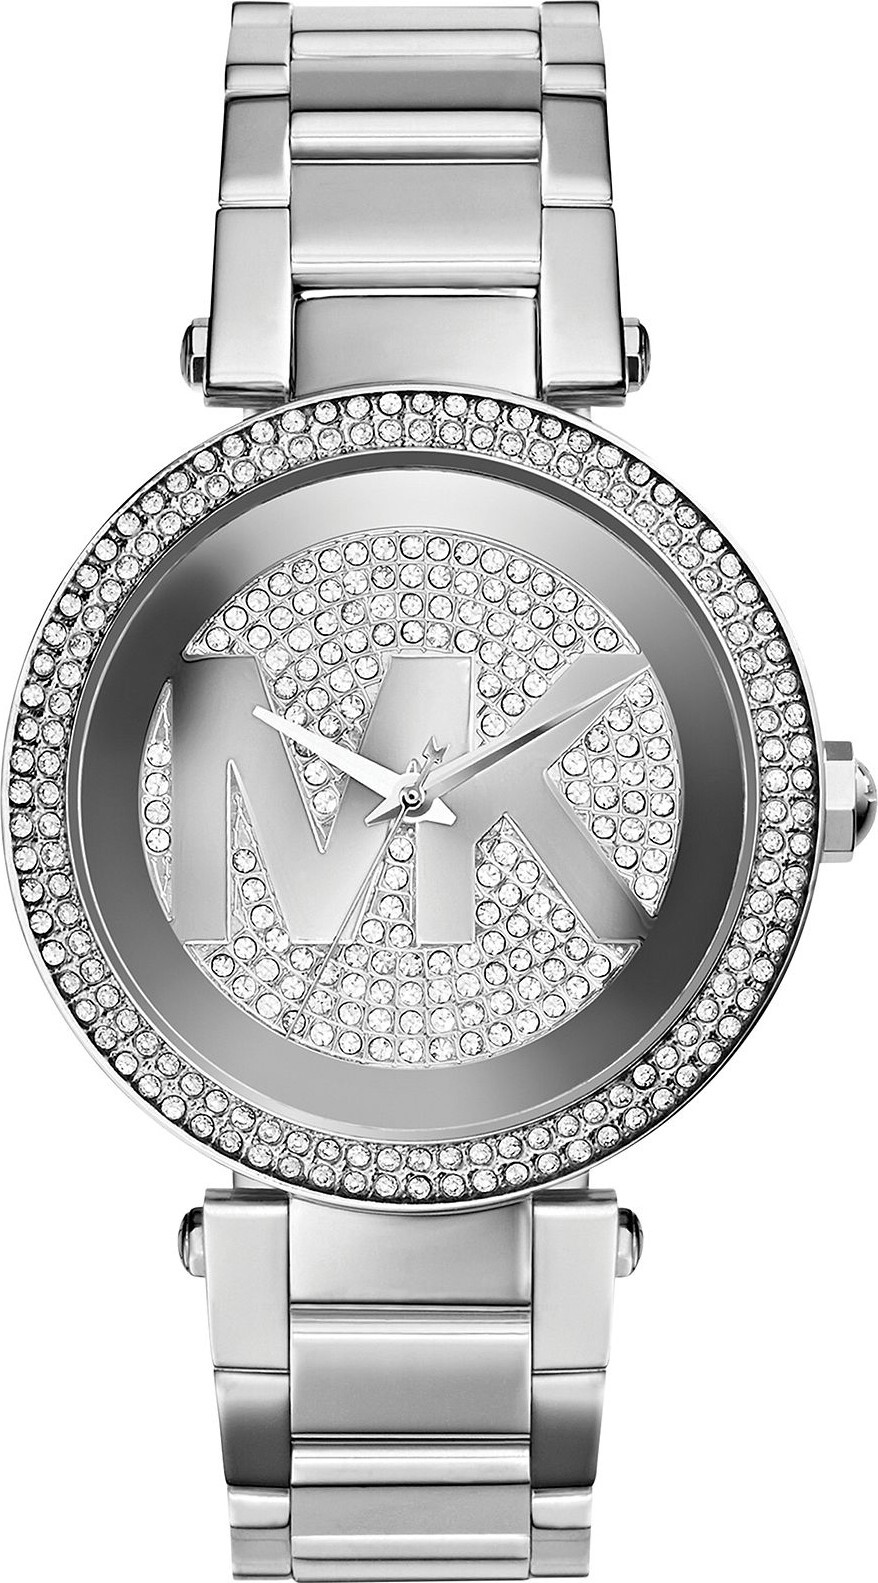 Đồng hồ Michael Kors MK5925